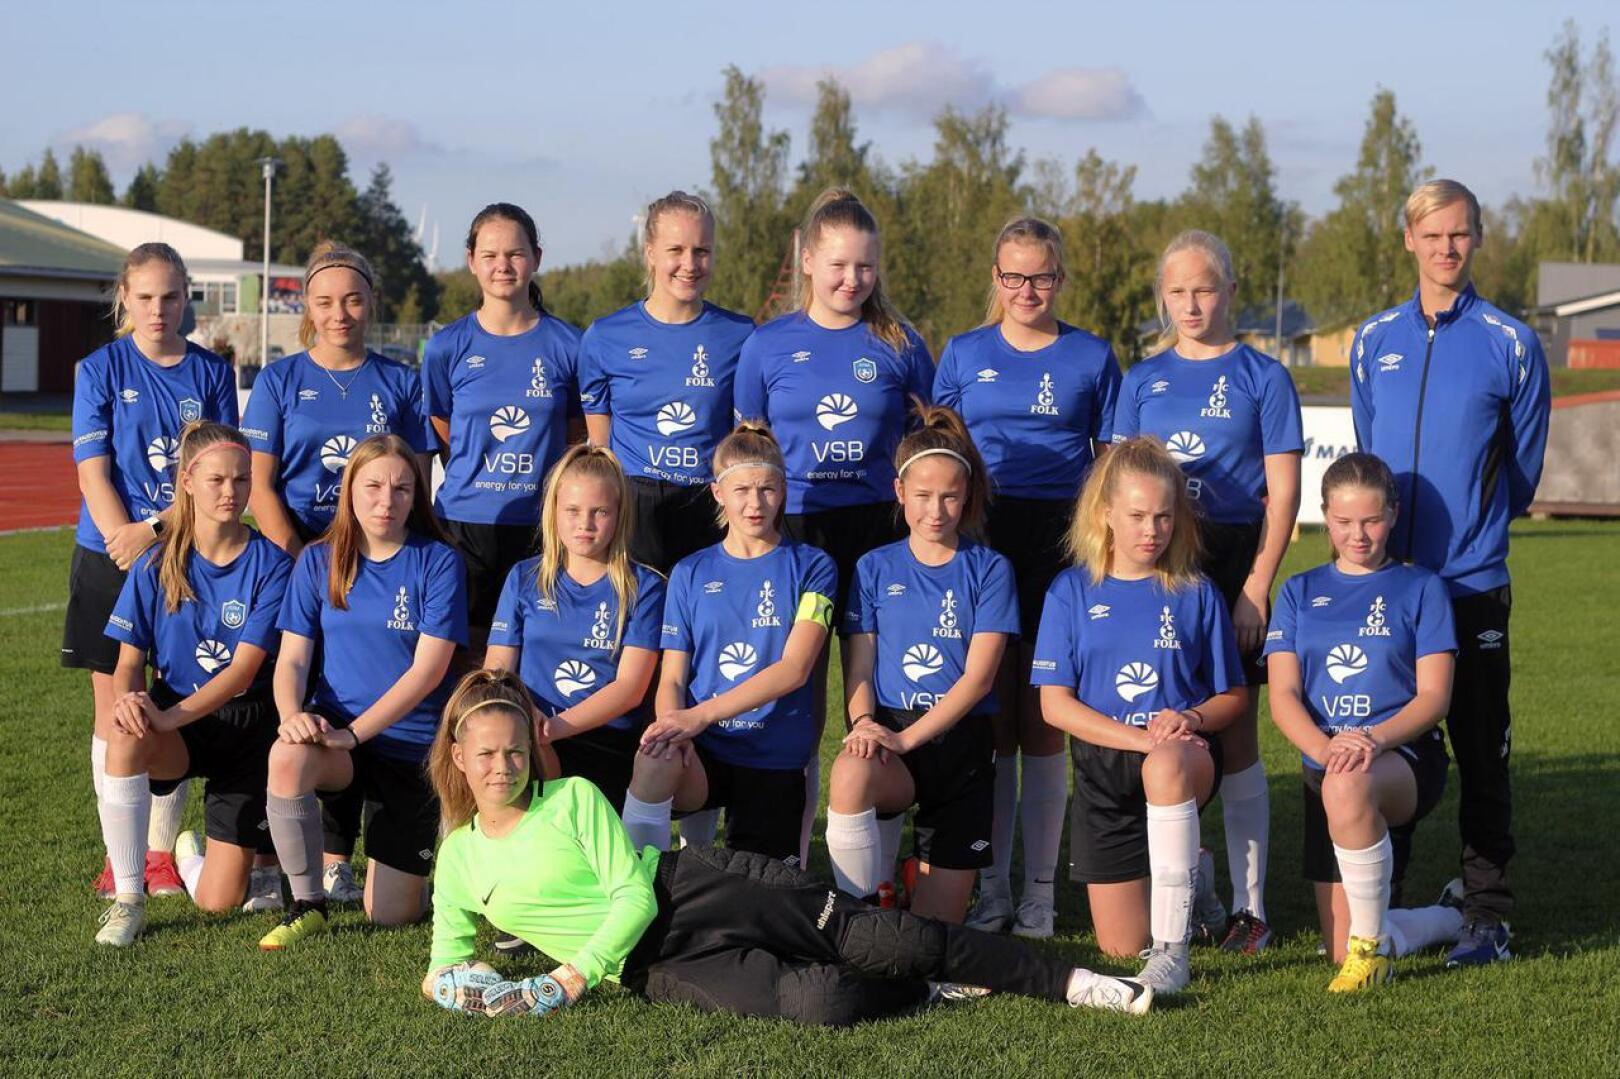 FC Folkin T14-joukkue voitti seurahistorian ensimmäisen piirimestaruuden.